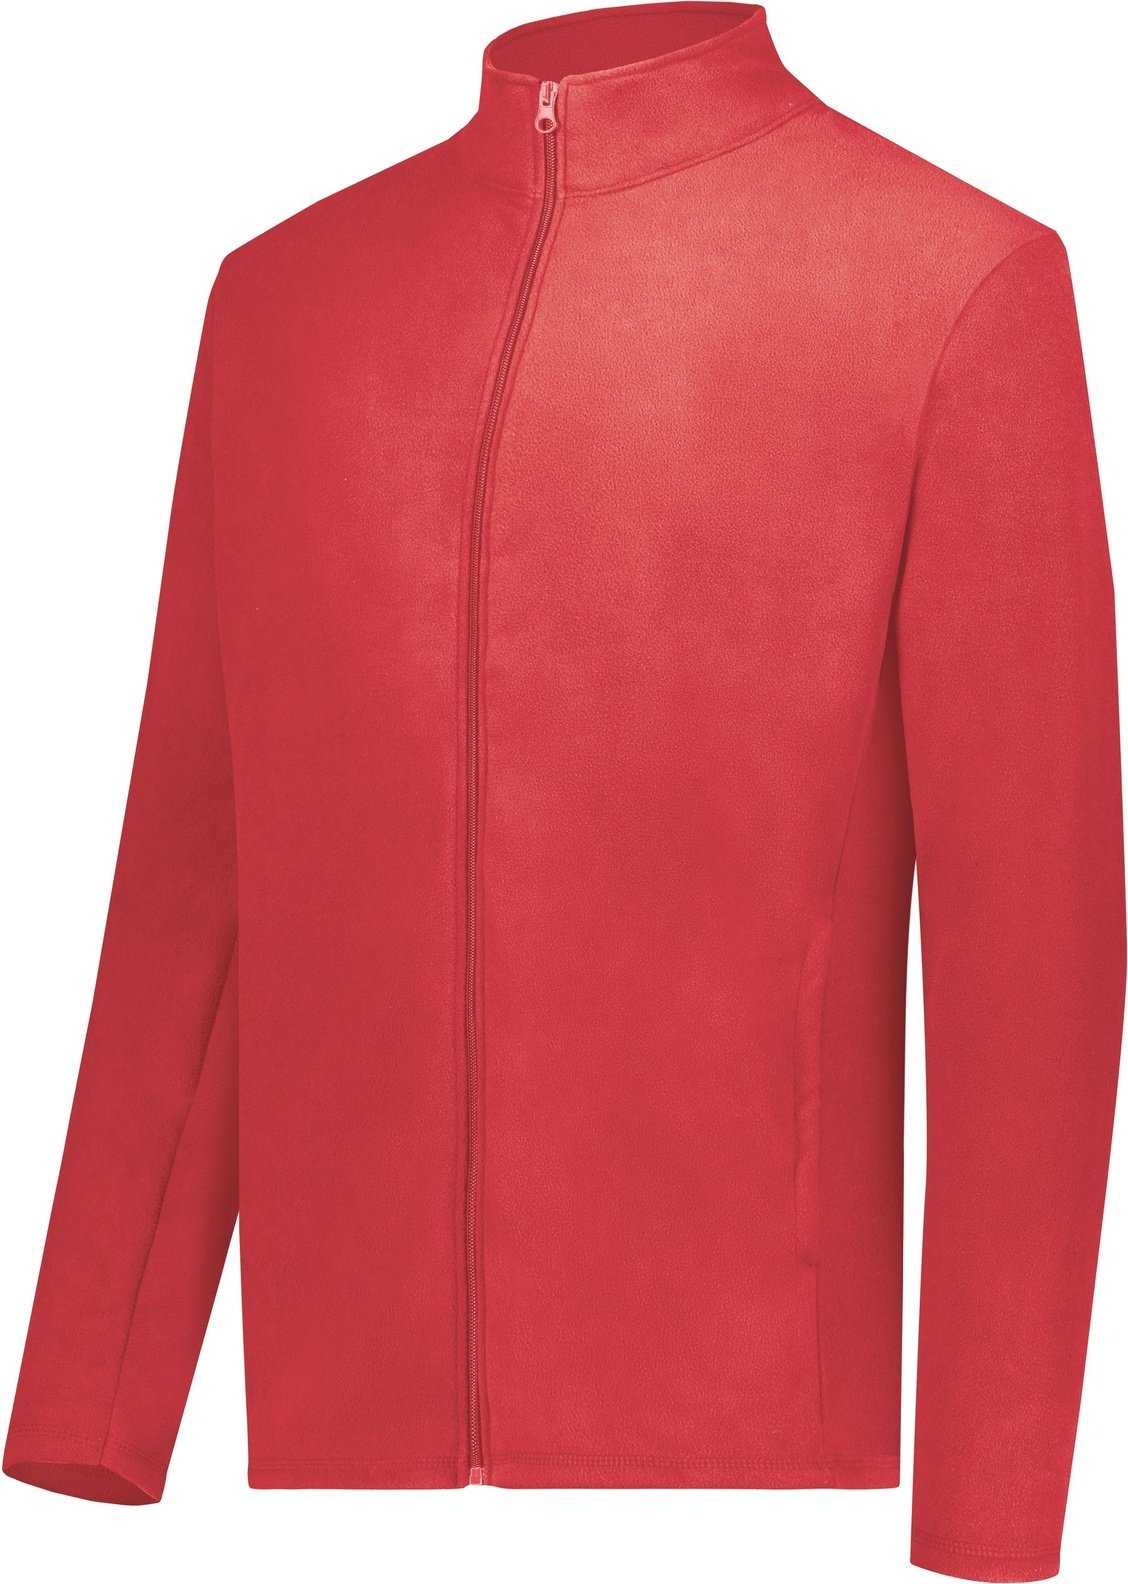 Augusta 6861 Micro-Lite Fleece Full Zip Jacket - Scarlet - HIT a Double